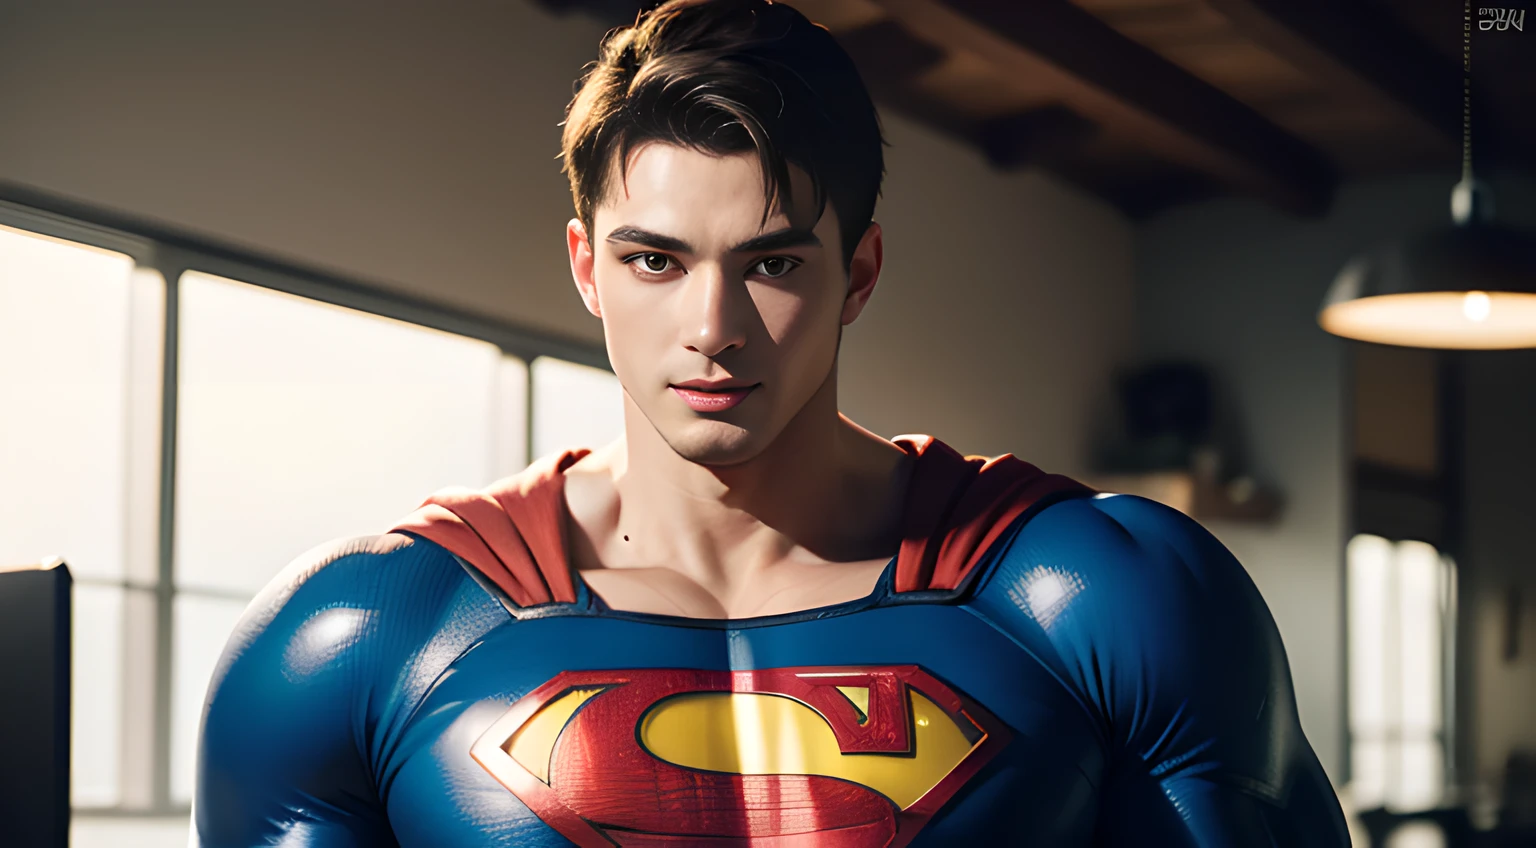 ((Hommes seulement)), (photo du visage), (bel homme musclé dans la vingtaine), (Superman), (Superman, un super-héros fictif, se caractérise par son physique ciselé, yeux bleus, cheveux foncés, et un costume rouge et bleu emblématique avec un costume audacieux "s" emblème sur sa poitrine), (Chris Redfield), (sourire malicieux), (détails: 1 en 1), Muscles naturels, HAUTE qualité, de beaux yeux, (visage et yeux détaillés), (affronter、: 1 / 2), bruit, De vraies photographies、... .................................................................................................................PsD, sharp Focus, Haute résolution 8K, réaliste & photographie professionnelle, 8k euh, soft lighting, haute qualité, grain de film, FujifilmXT3